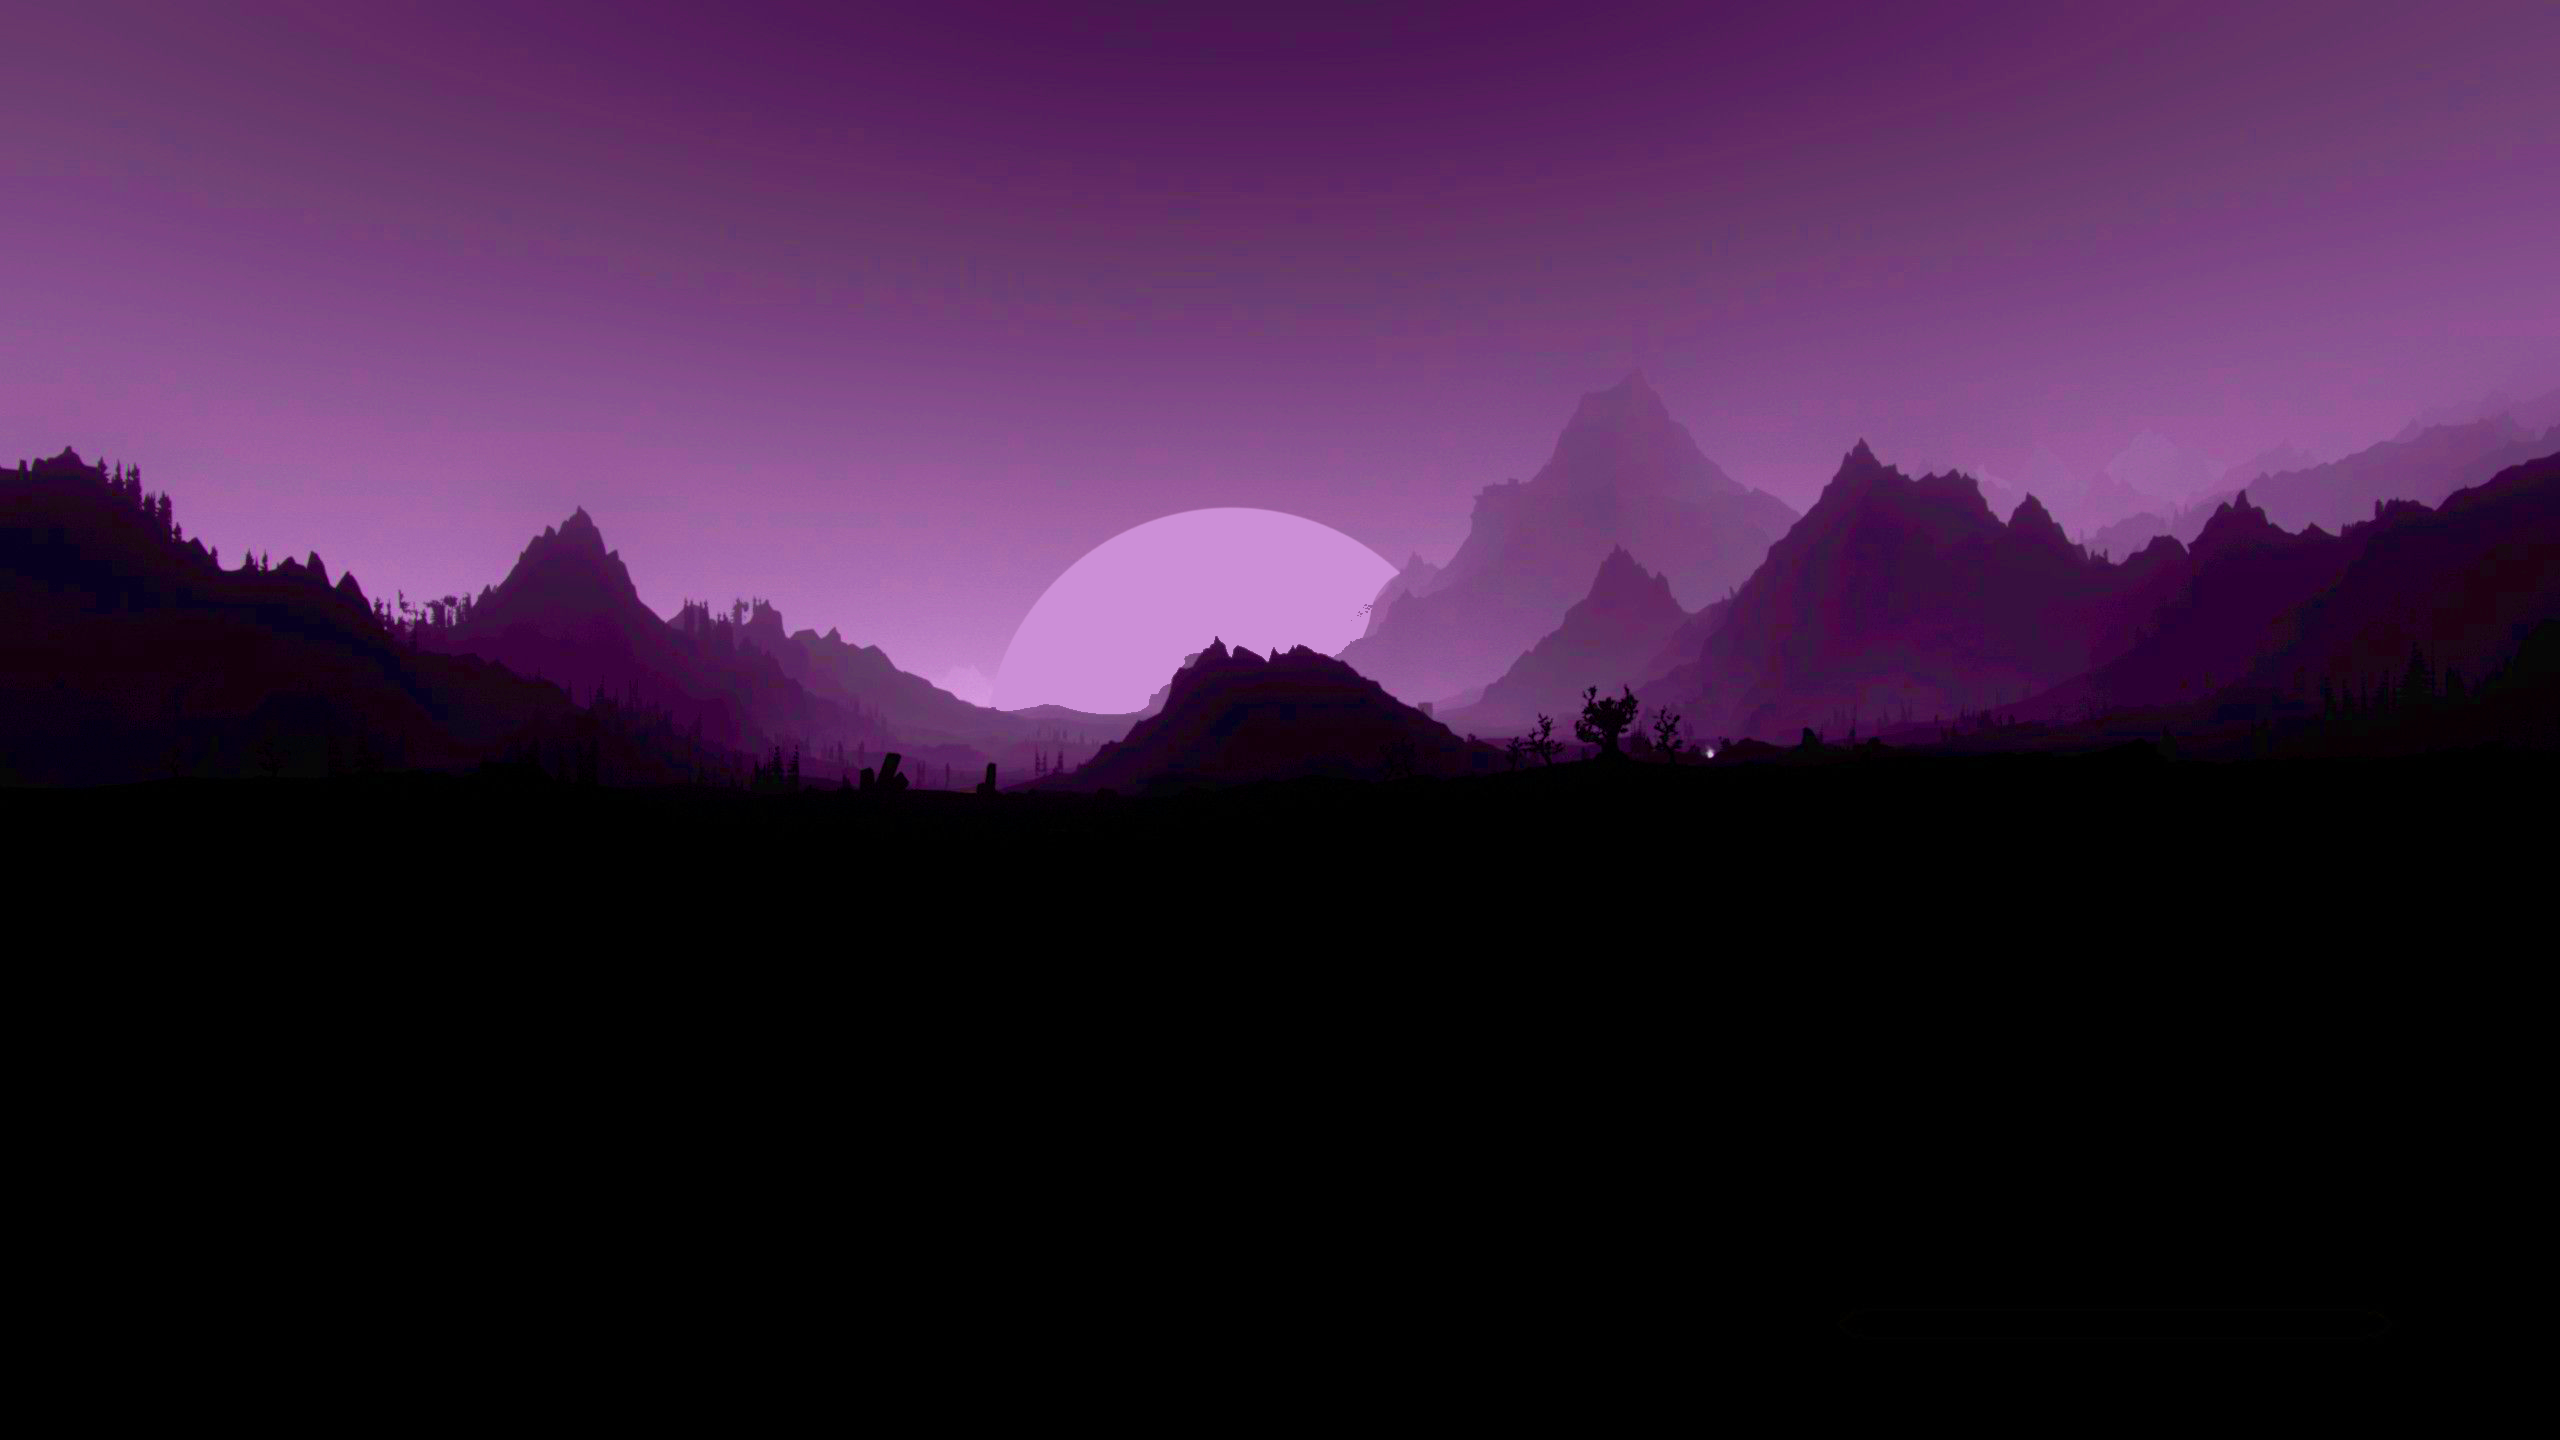 wallpaper desktop purple